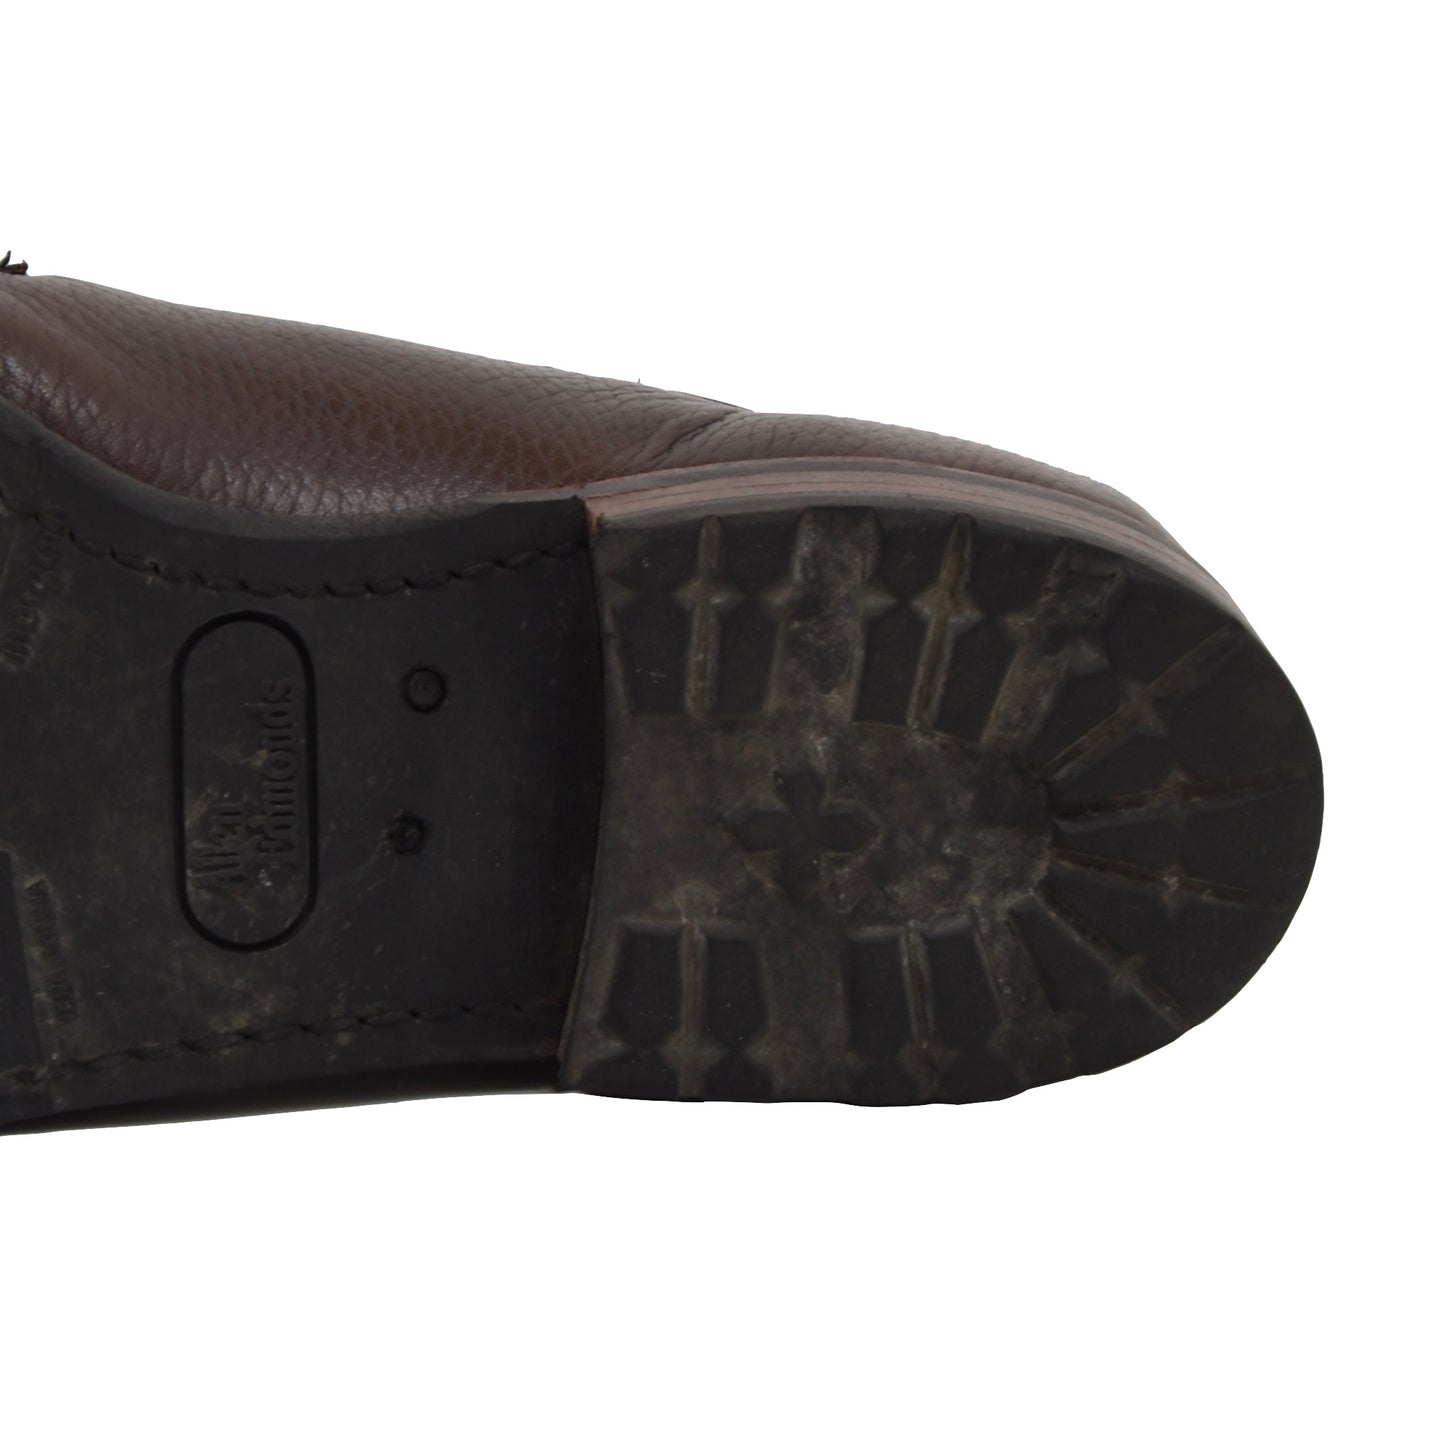 Allen Edmonds San Marco Schuhe Größe 9 D - Braun